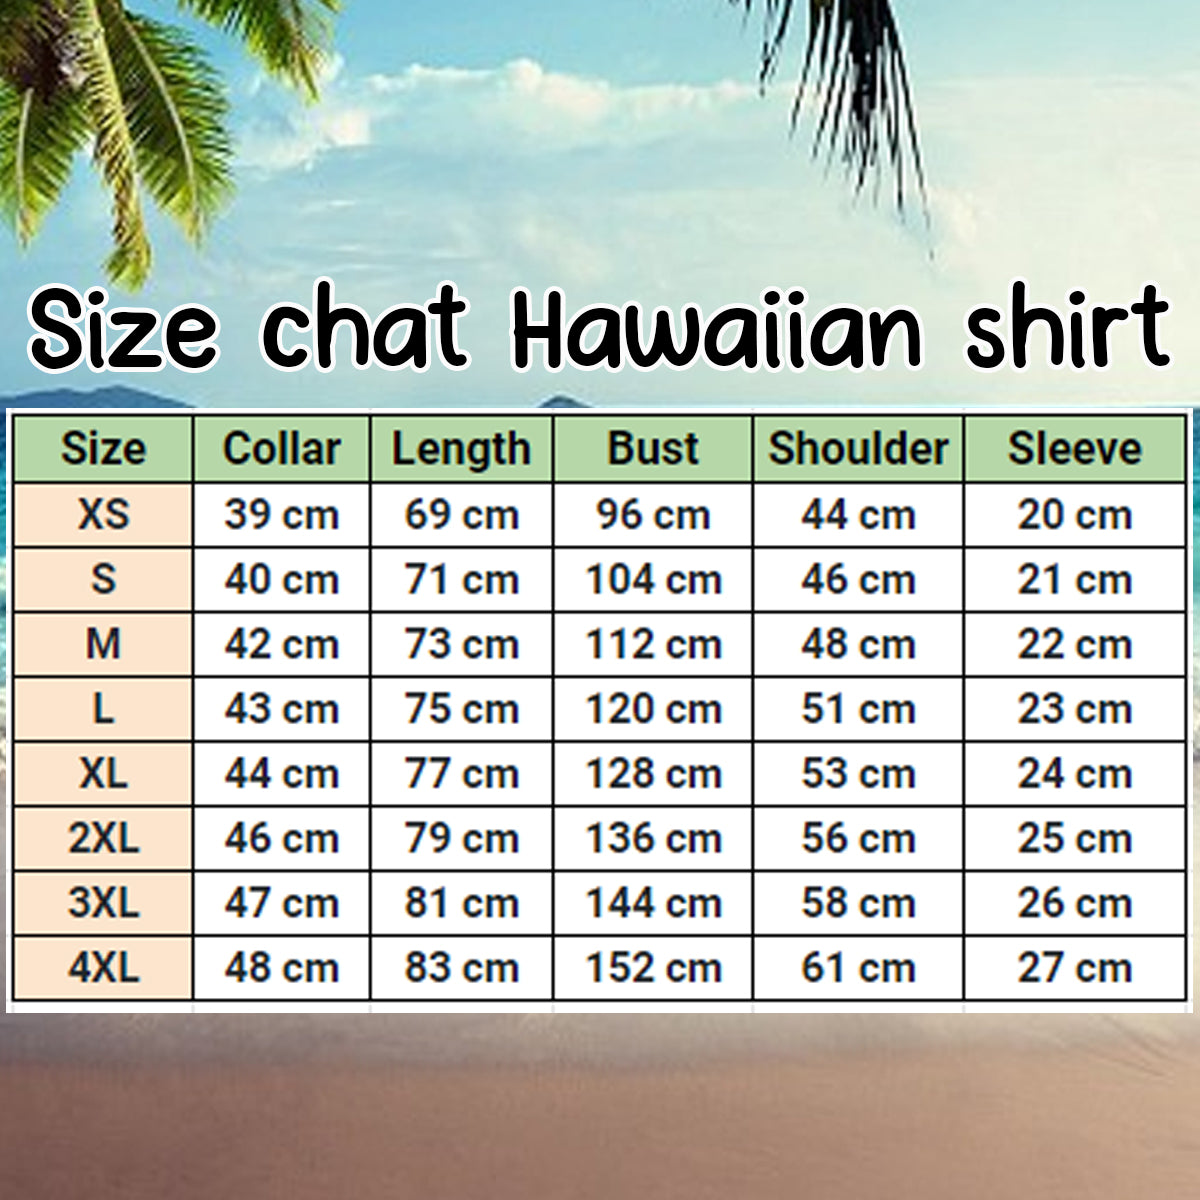 Darts And Beer - Personalized Name 3D Hawaiian Shirt